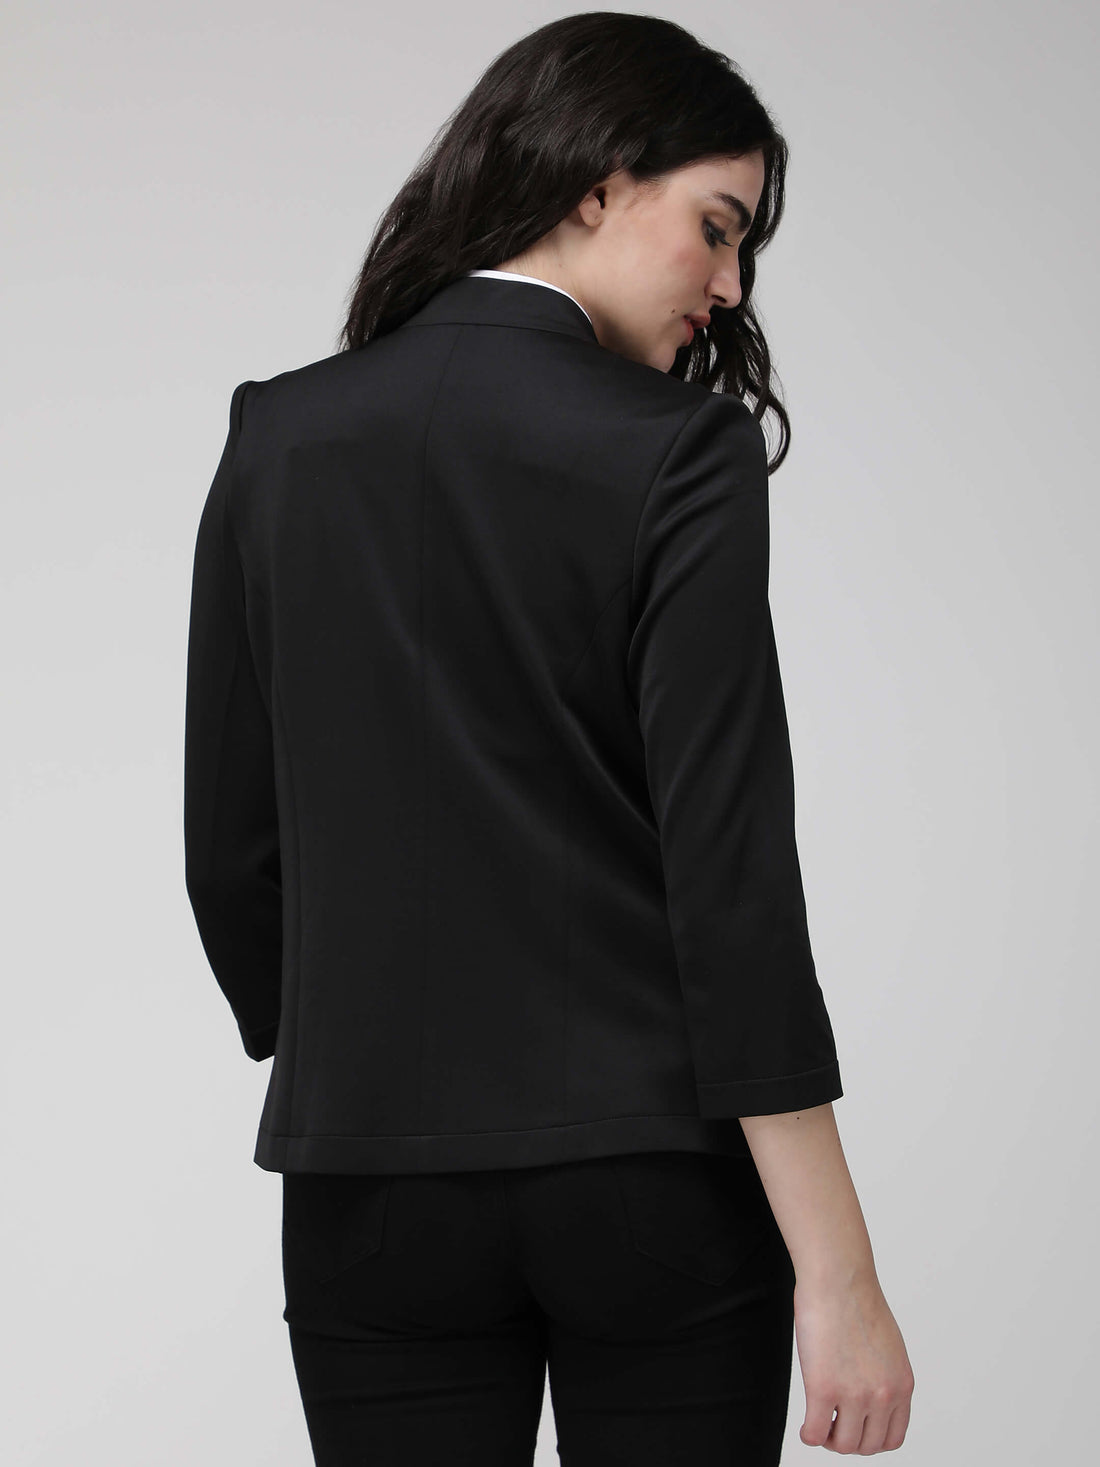 black jacket - formal